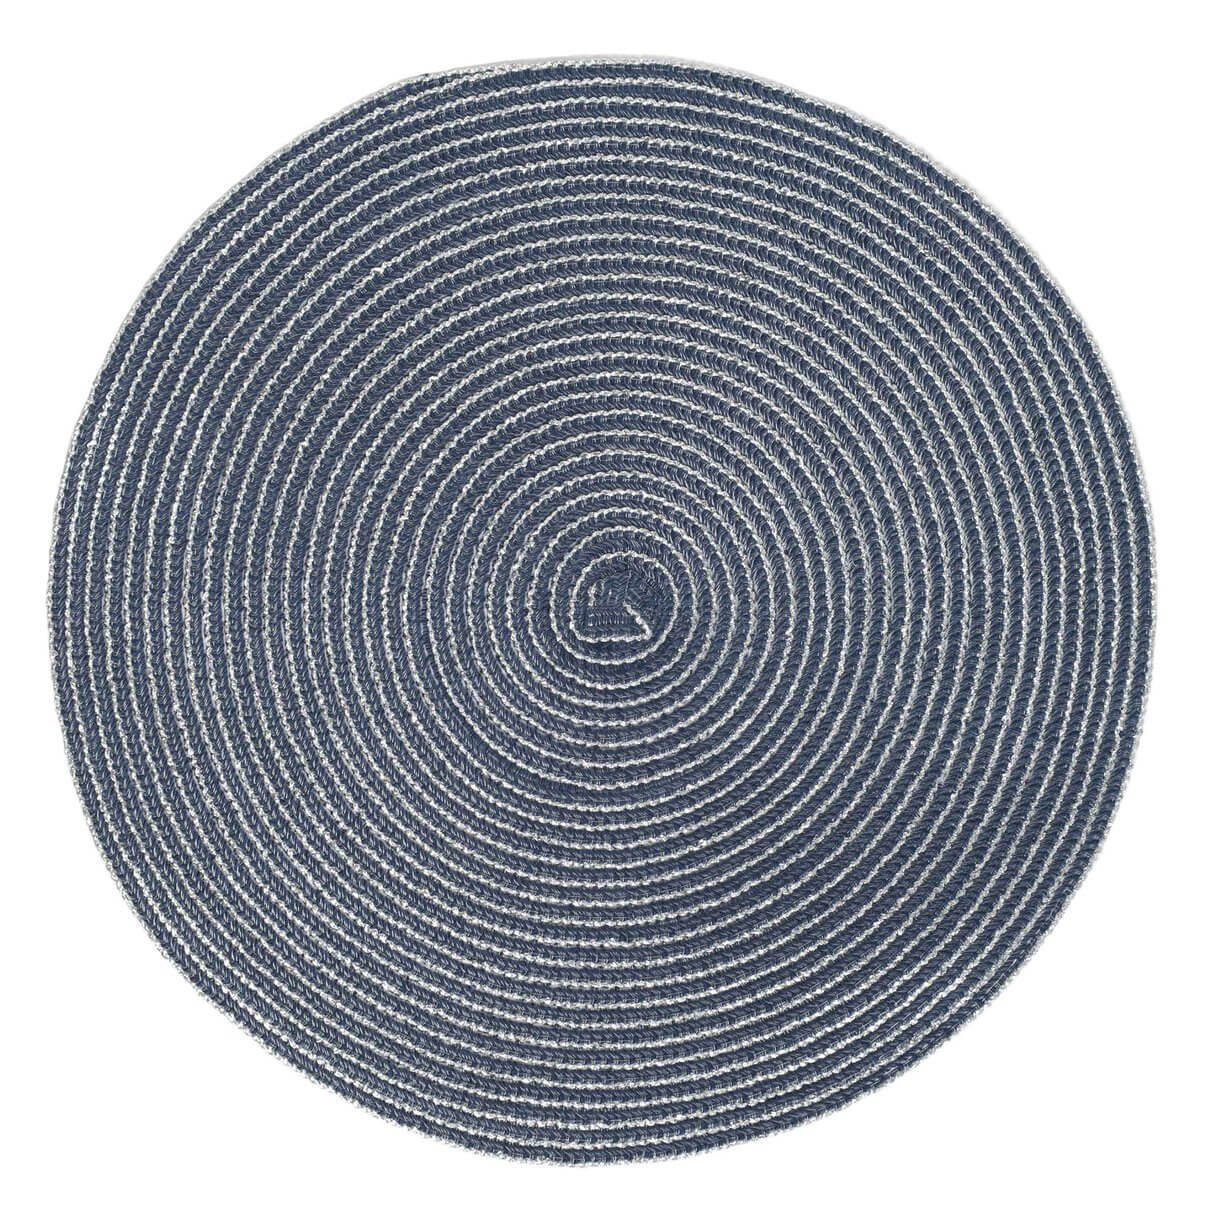 Салфетка под приборы, 38 см, полиэстер, круглая, темно-синяя, Rotary салфетка под приборы 38 см полипропилен пэт круглая серо синяя circle